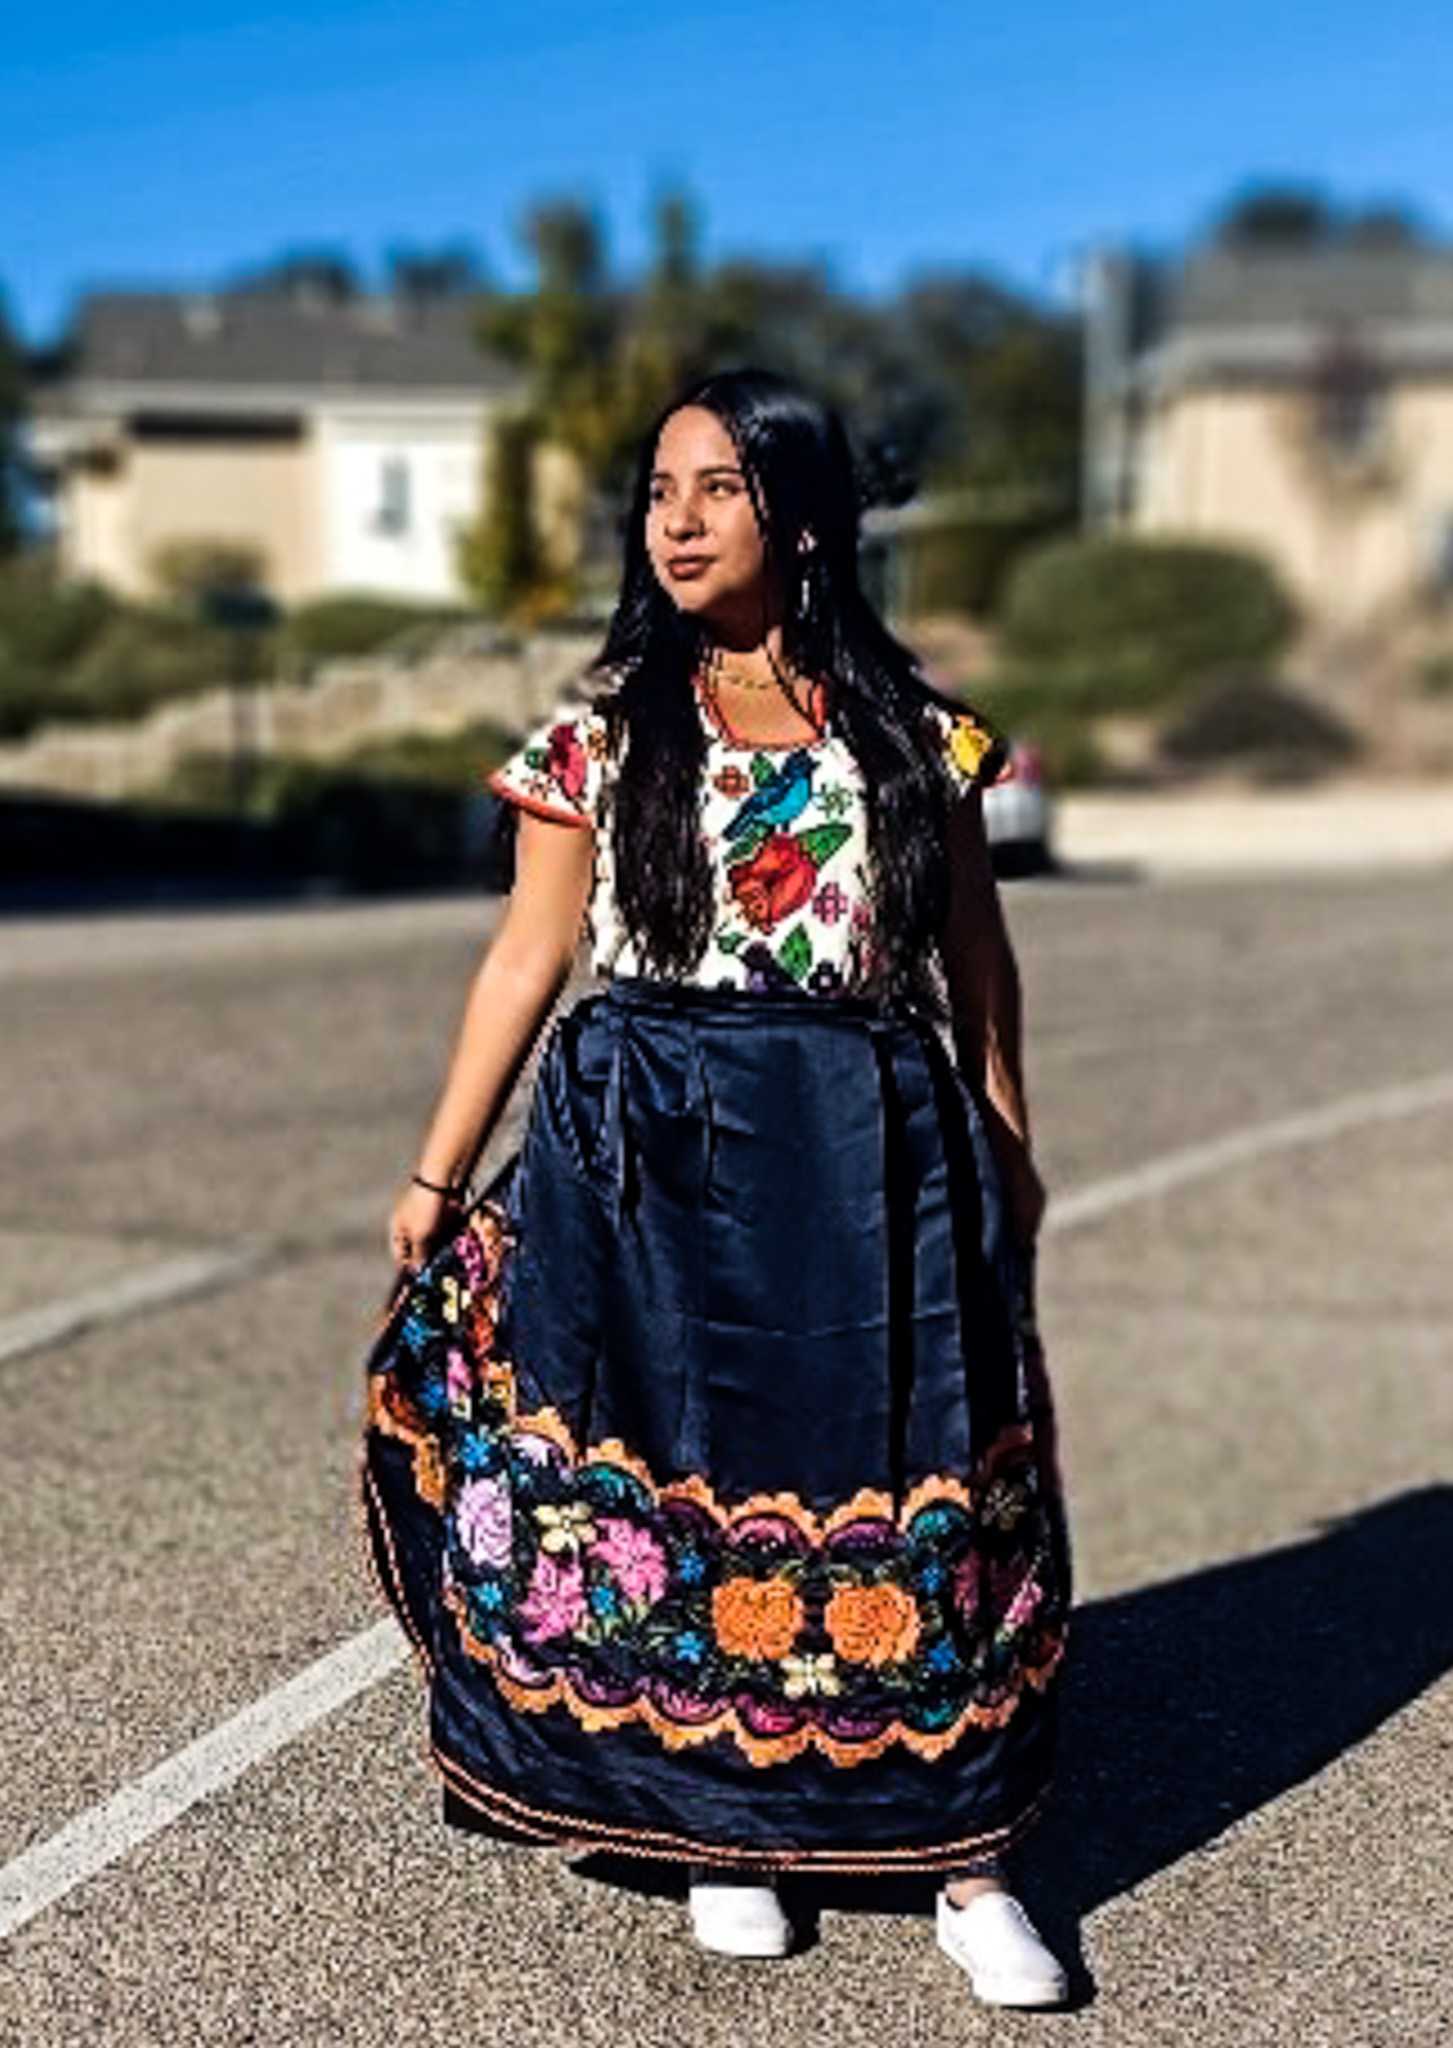 Reina Rodríguez estudiante de primer año es mexicana con raíces purépechas

